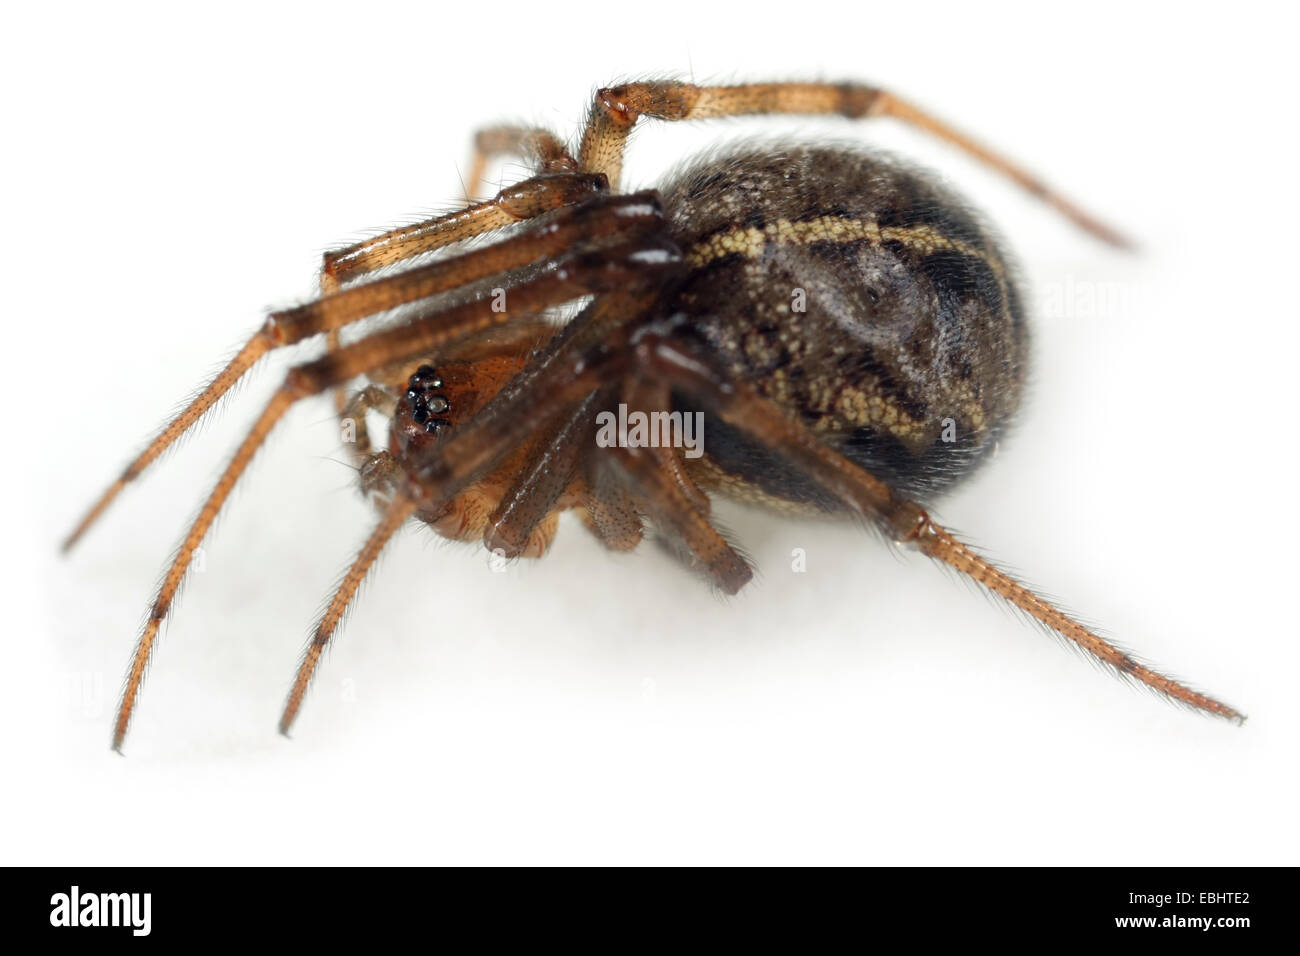 Une femelle Steatoda castanea spider, sur un fond blanc. Partie de la famille Theridiidae - Cobweb tisserands. Banque D'Images